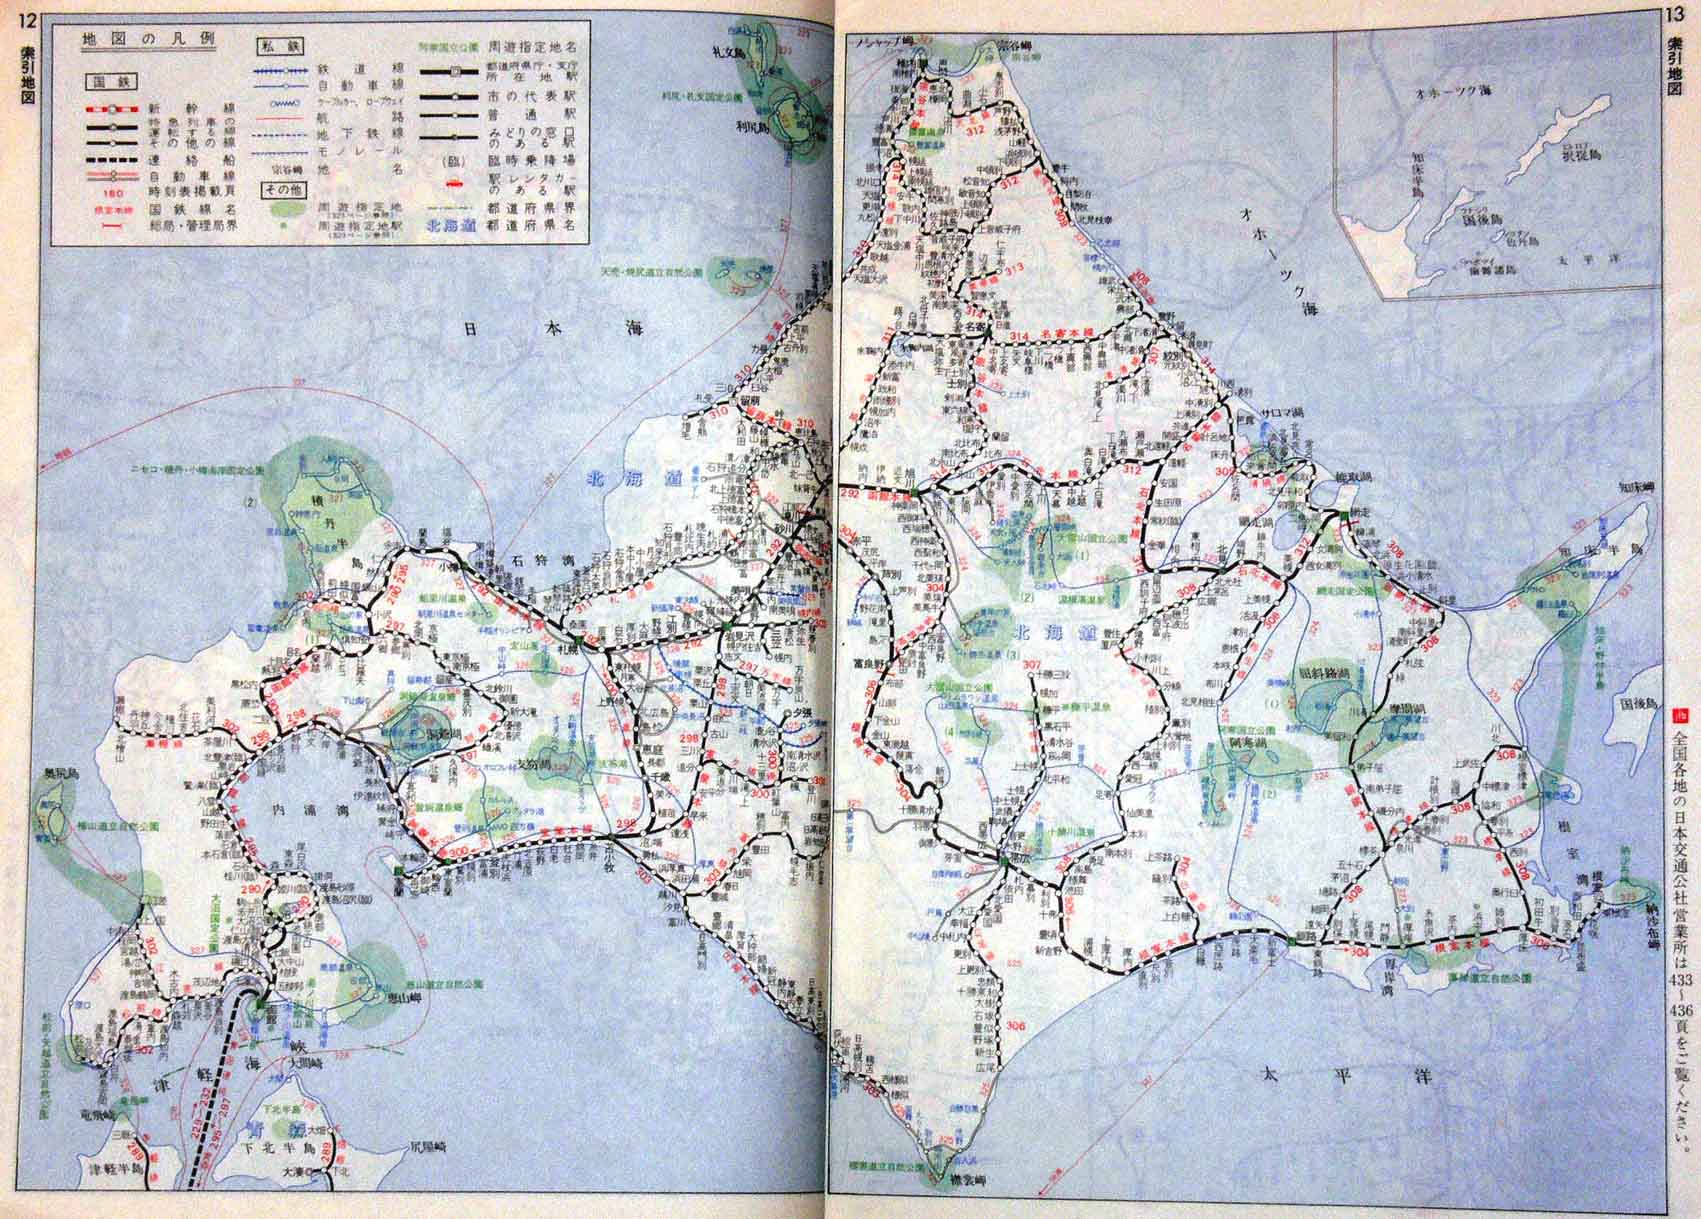 昔 の 北海道 の 路線 図 が 凄い